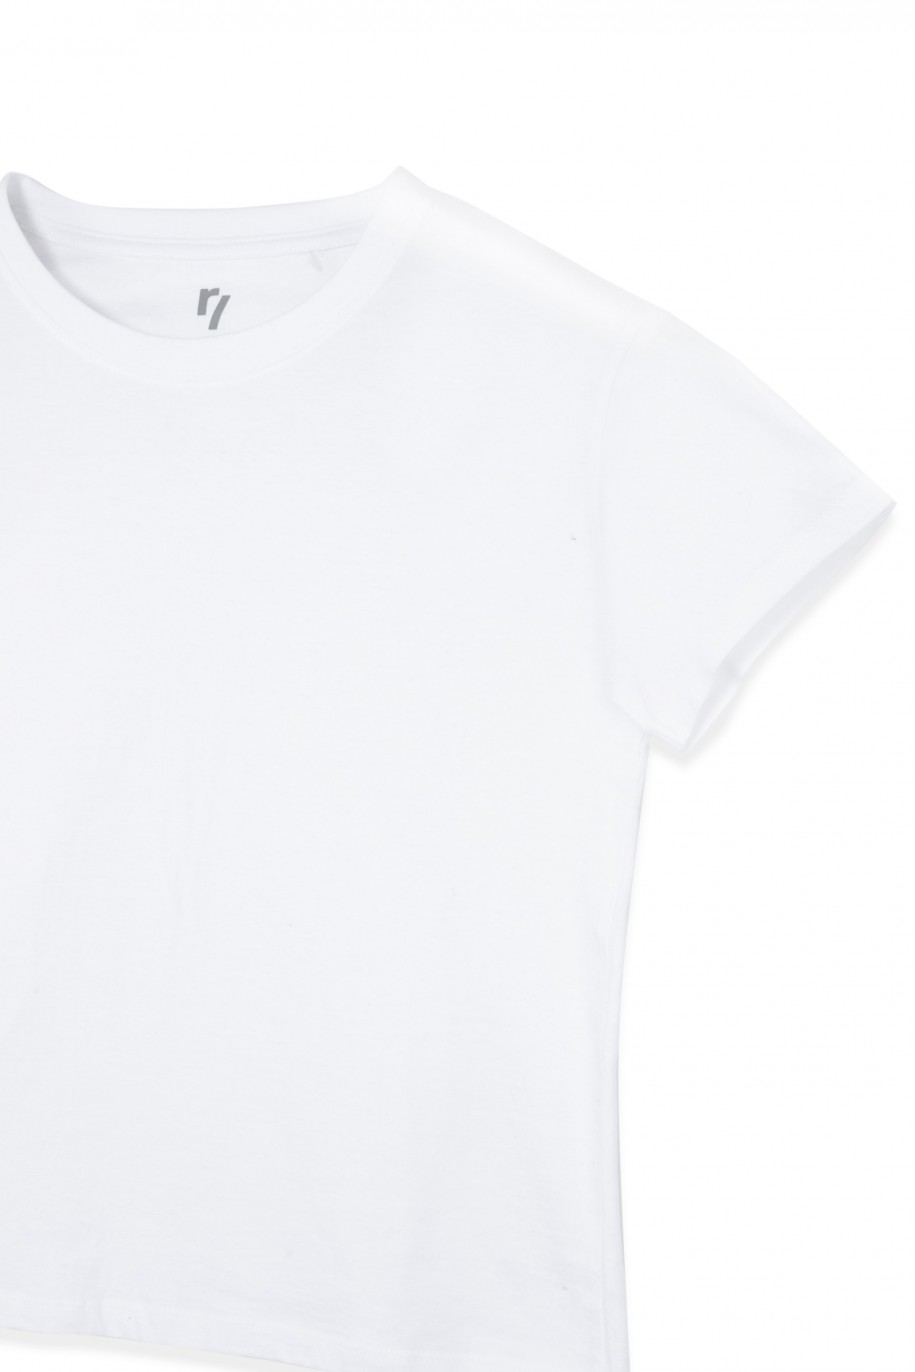 Biały t-shirt dla dziewczyny bez nadruku - 29366